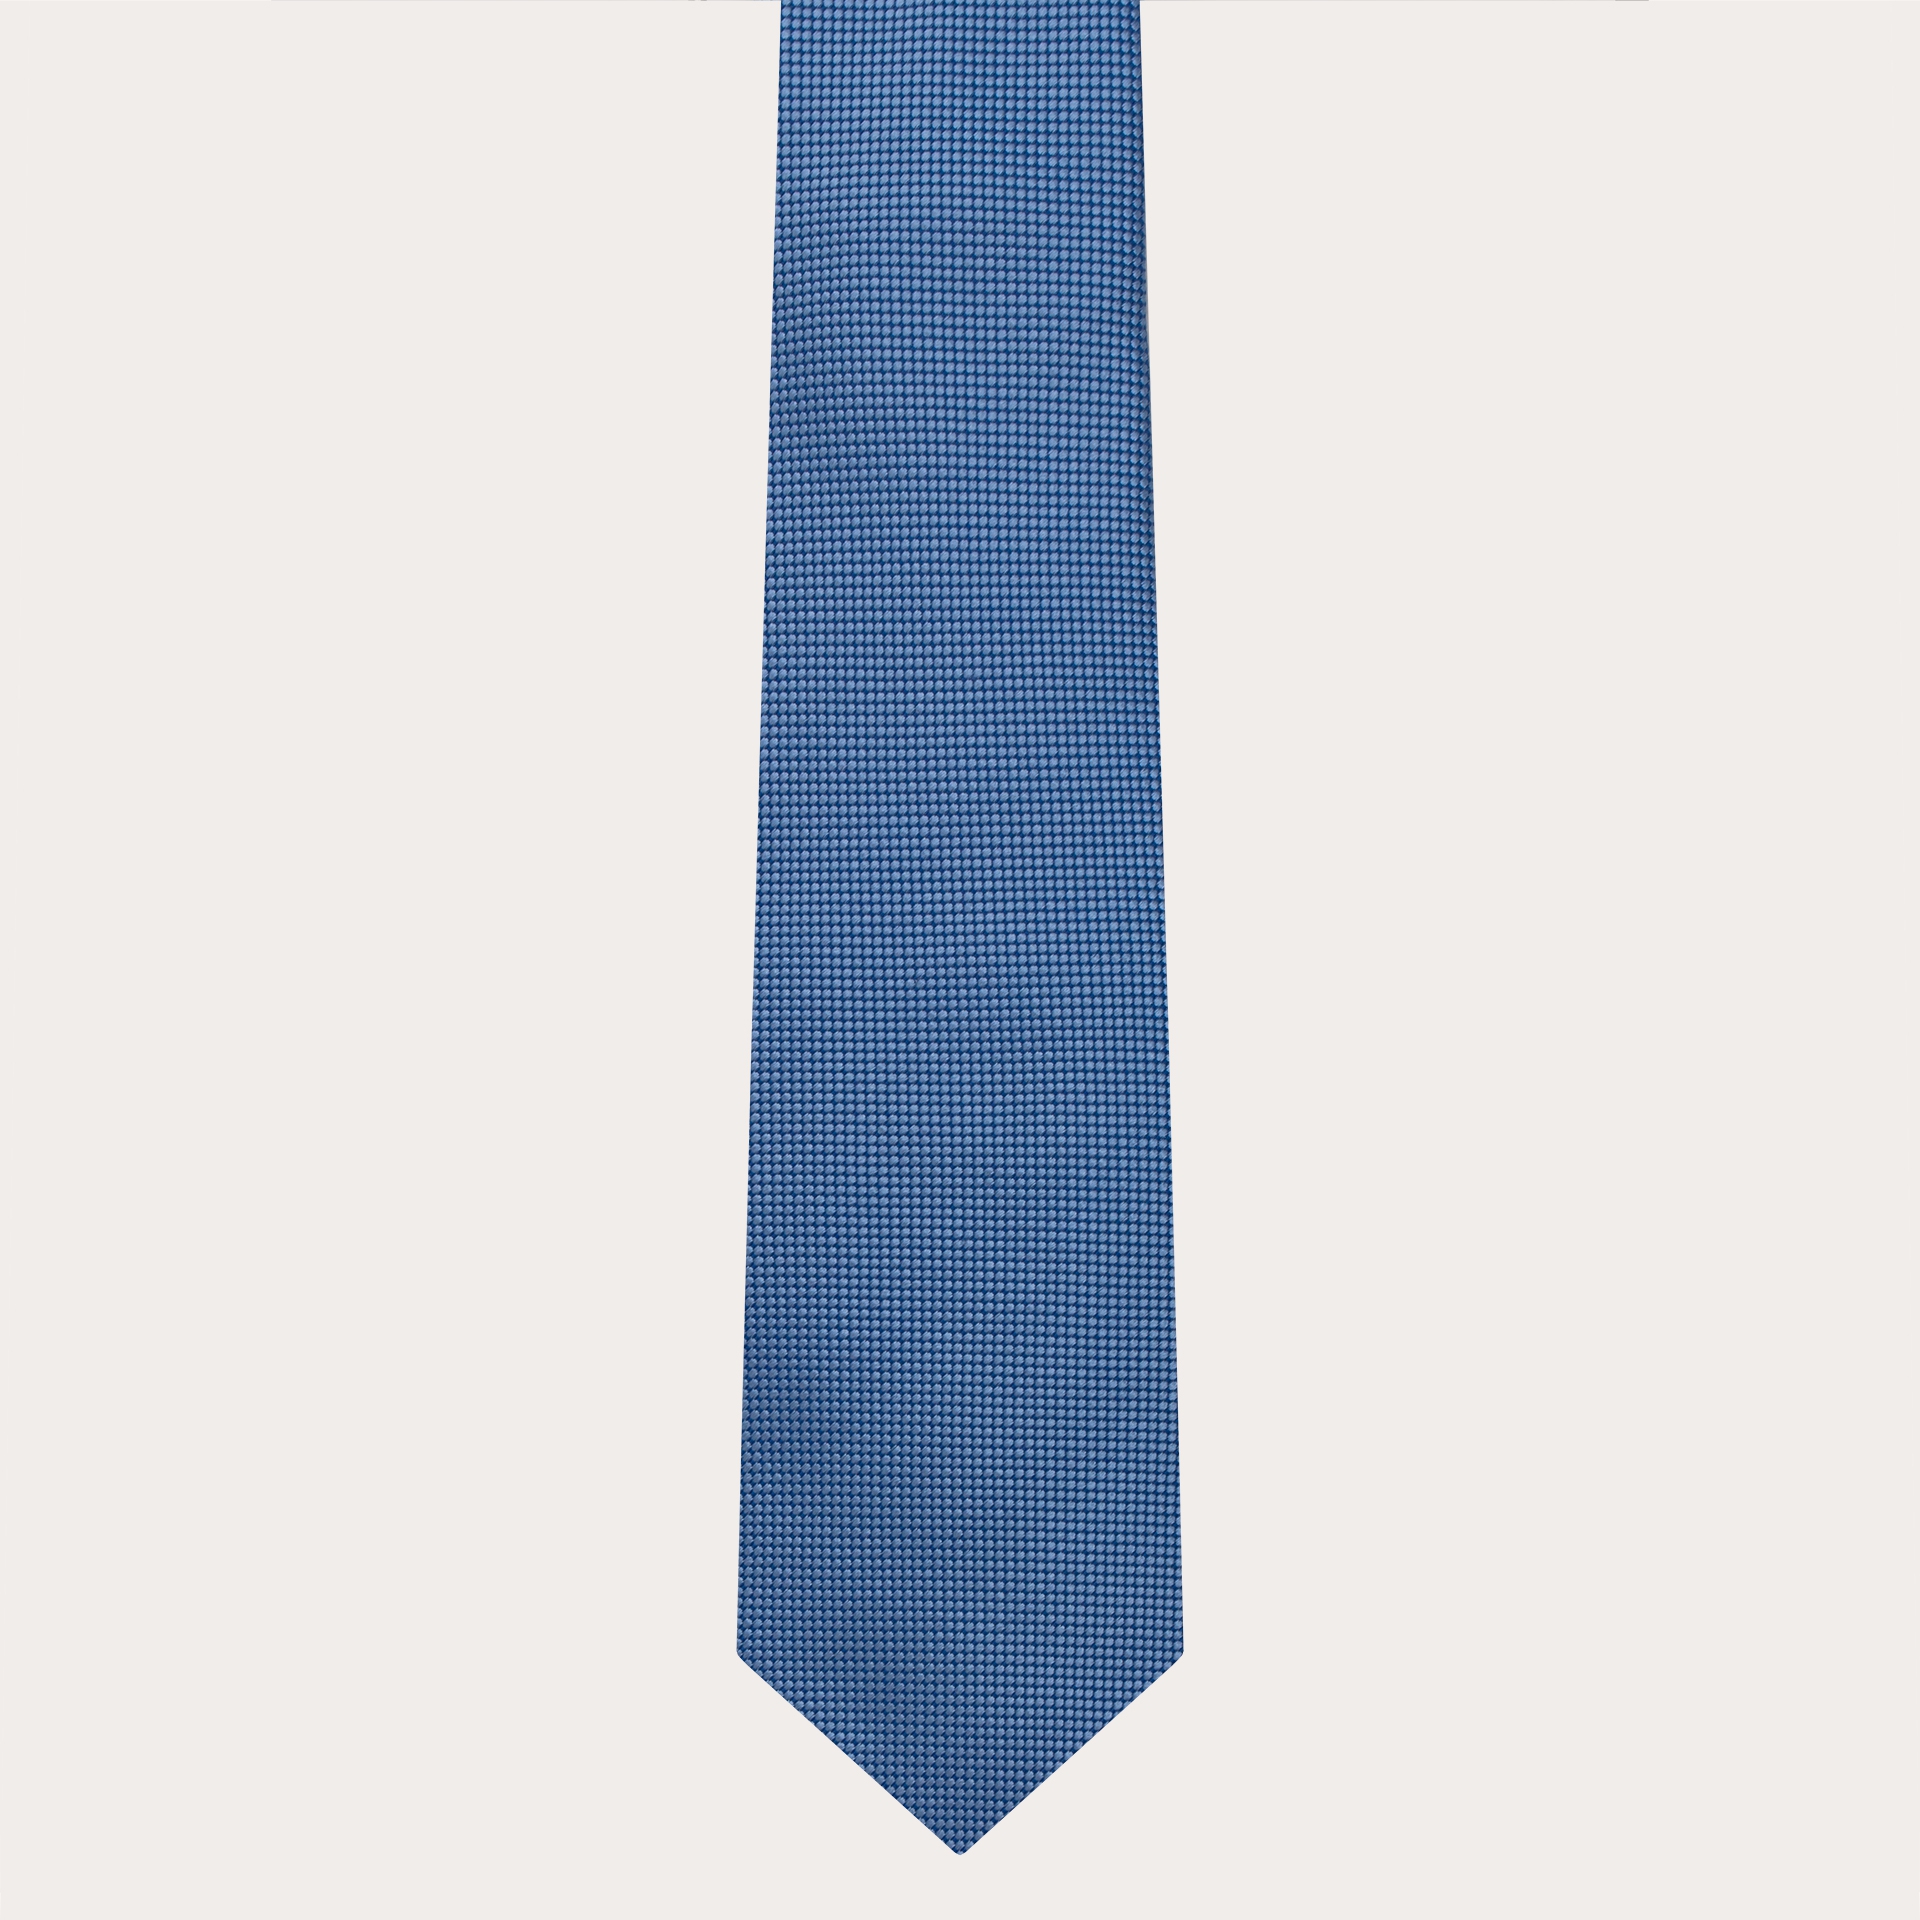 Cravate de cérémonie en soie jacquard, motif pois bleu clair